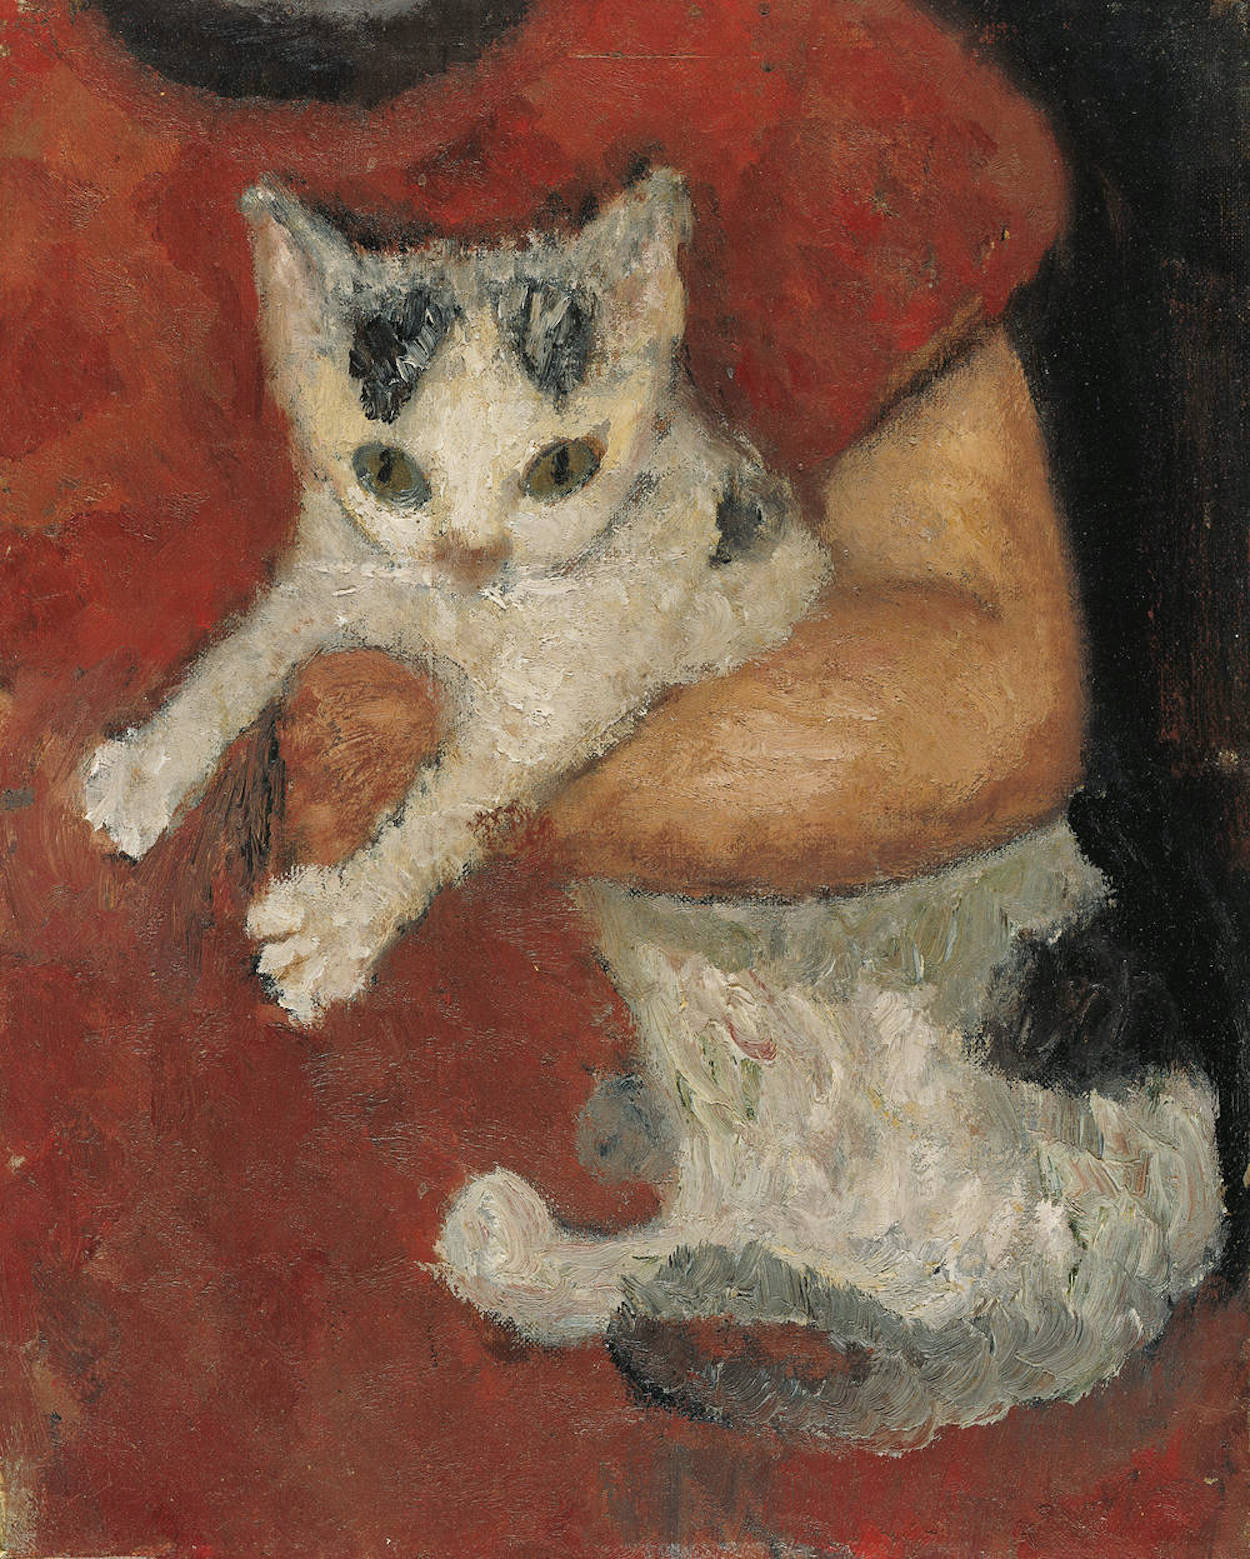 Kot w dziecięcych ramionach by Paula Modersohn-Becker - 1903 - 32,5 x 25,6 cm 